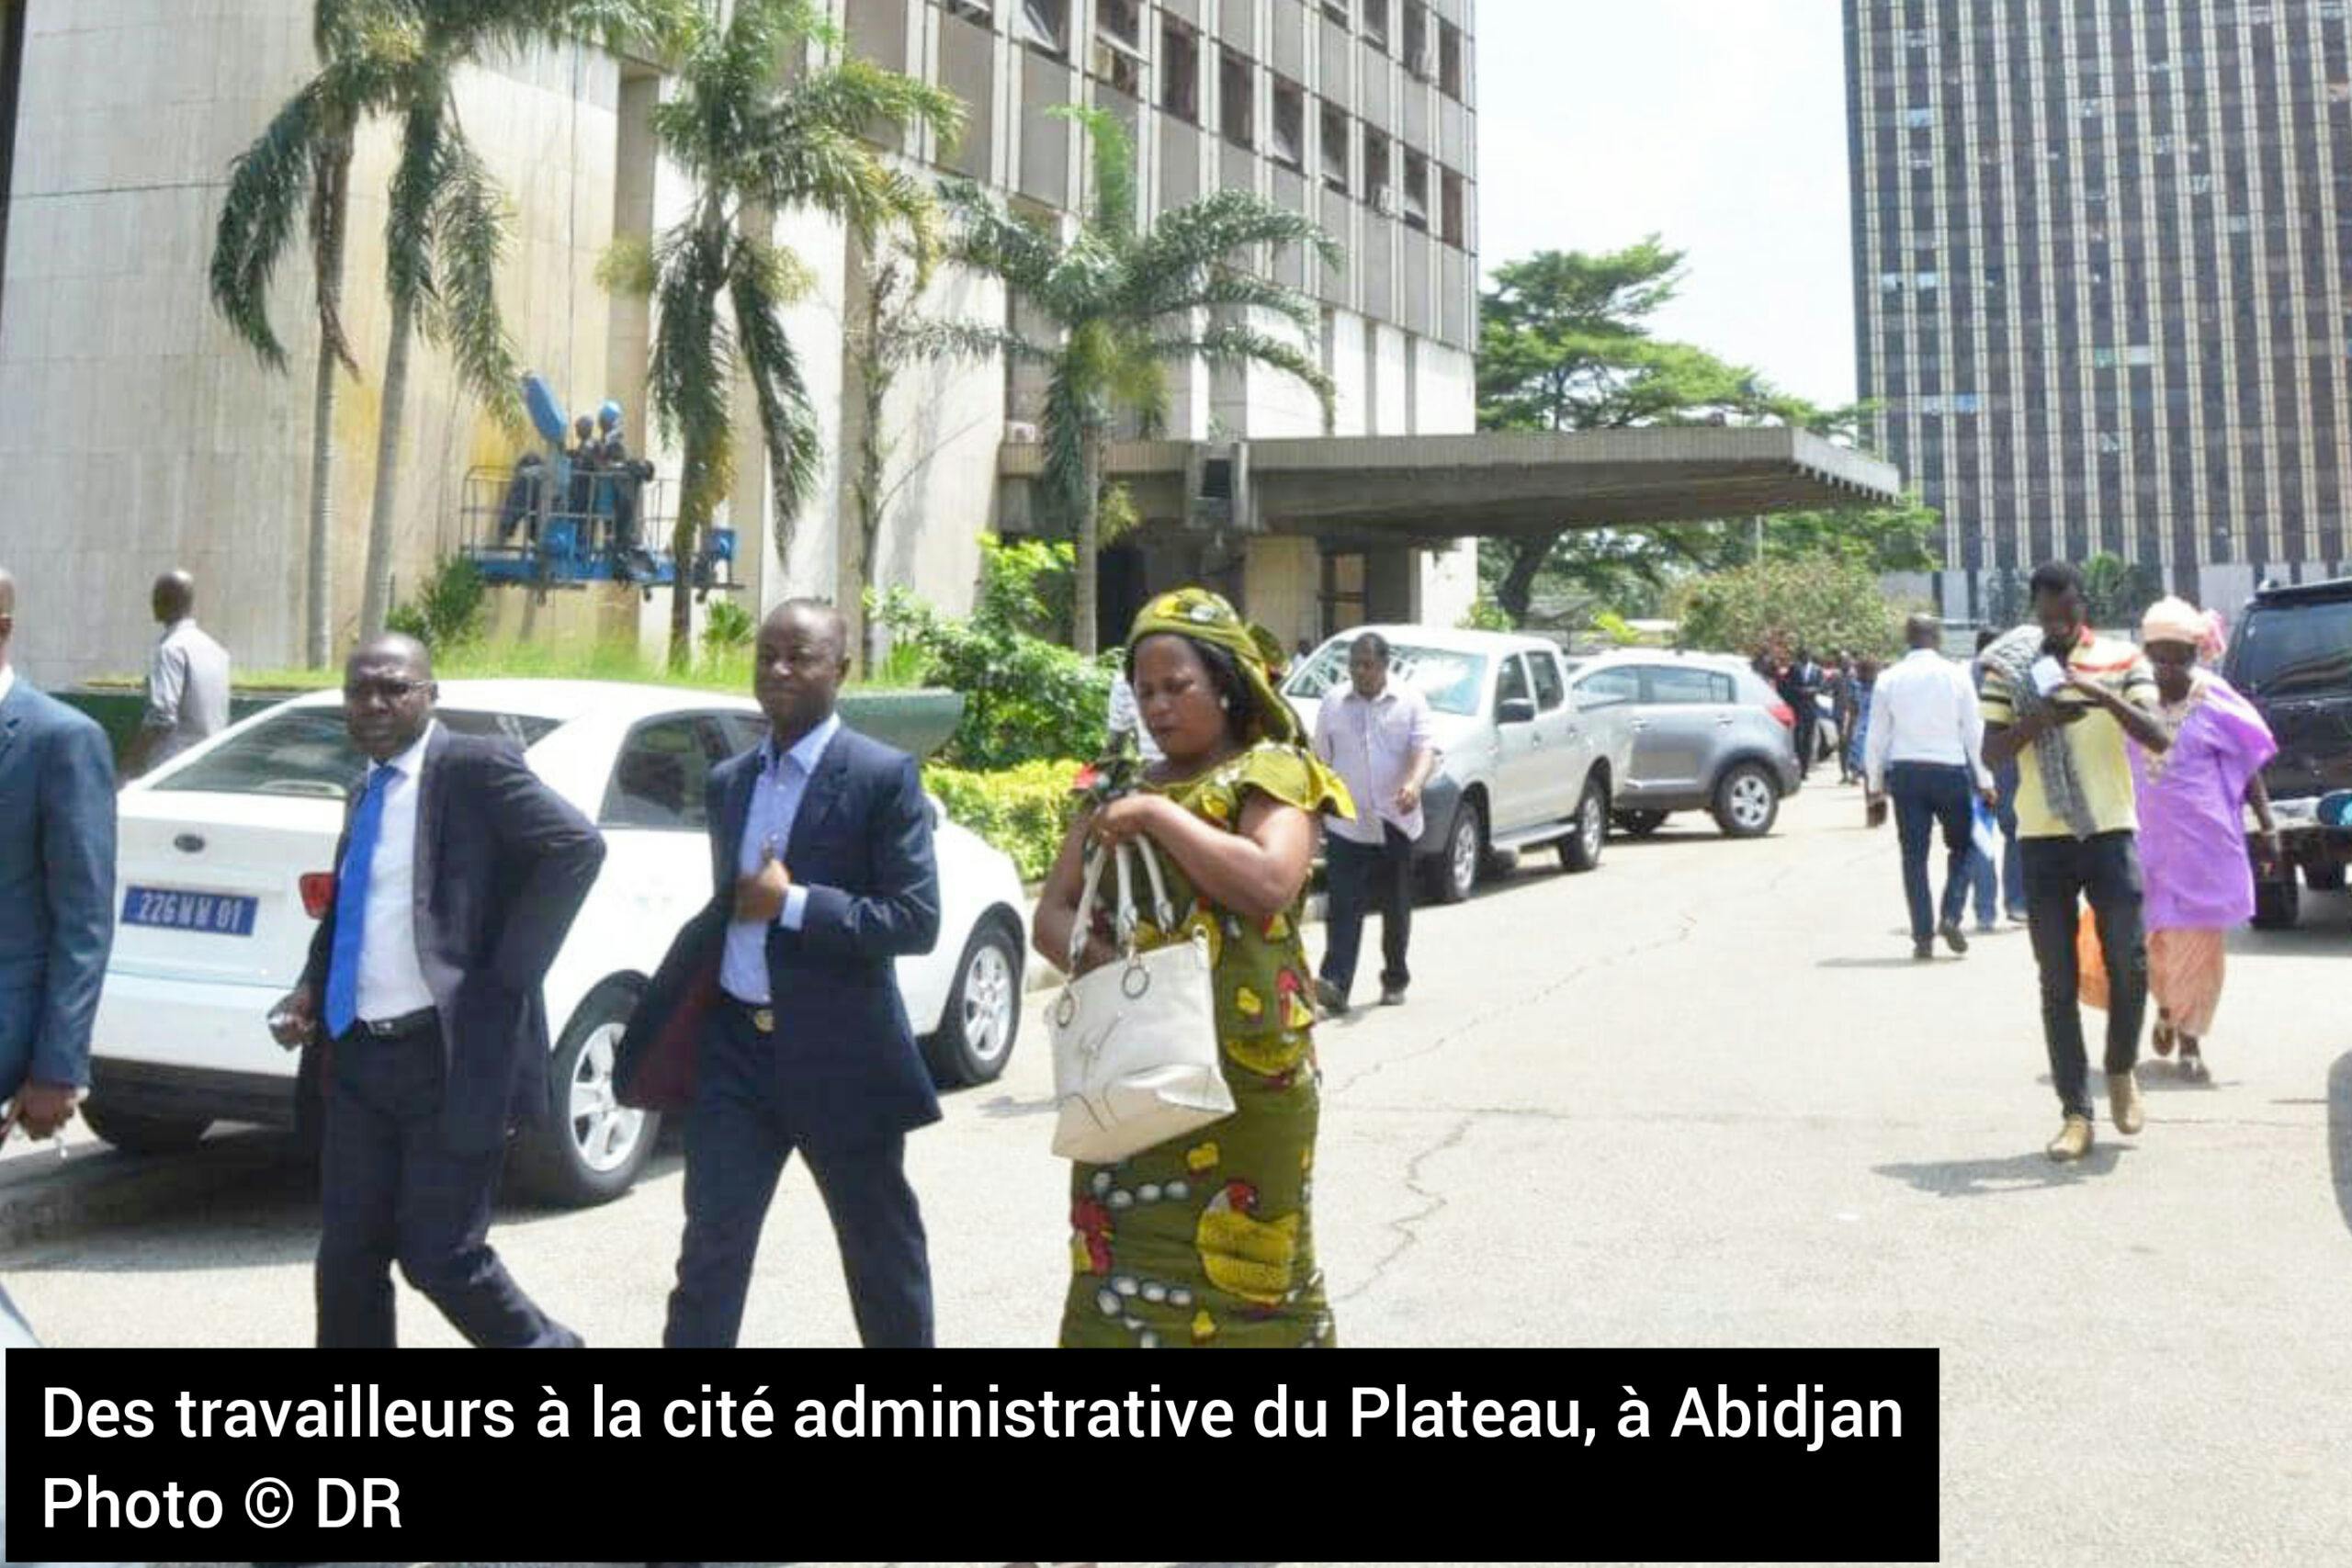 Amélioration des conditions de vie des travailleurs en Côte d’Ivoire : le gouvernement œuvre à la consolidation des acquis